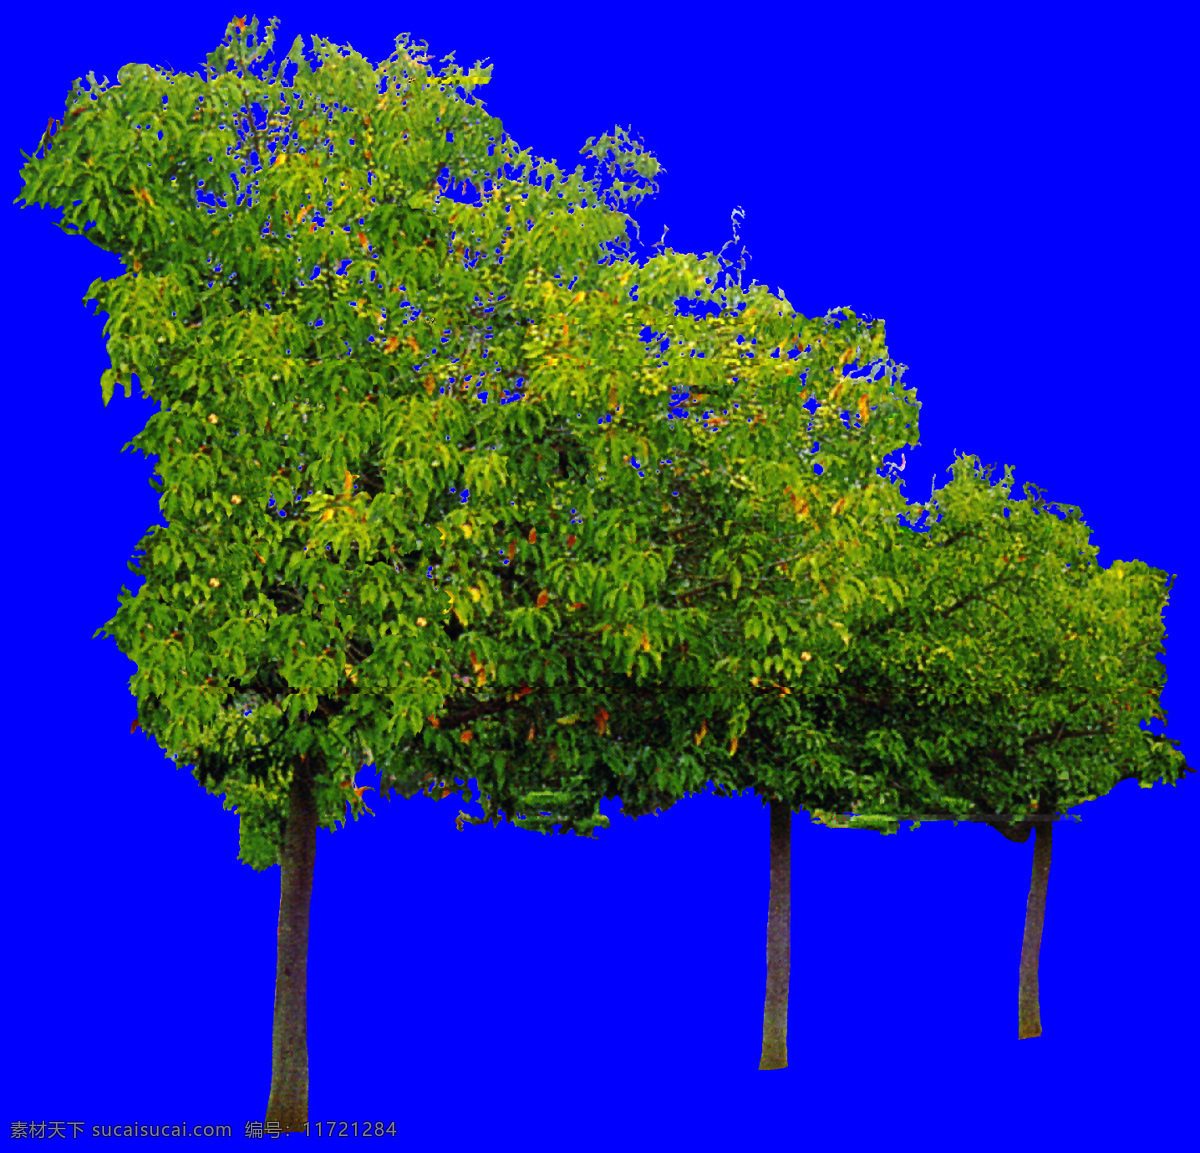 棵 树群 植物 园林植物 多棵 配景素材 园林 建筑装饰 设计素材 3d模型素材 室内场景模型